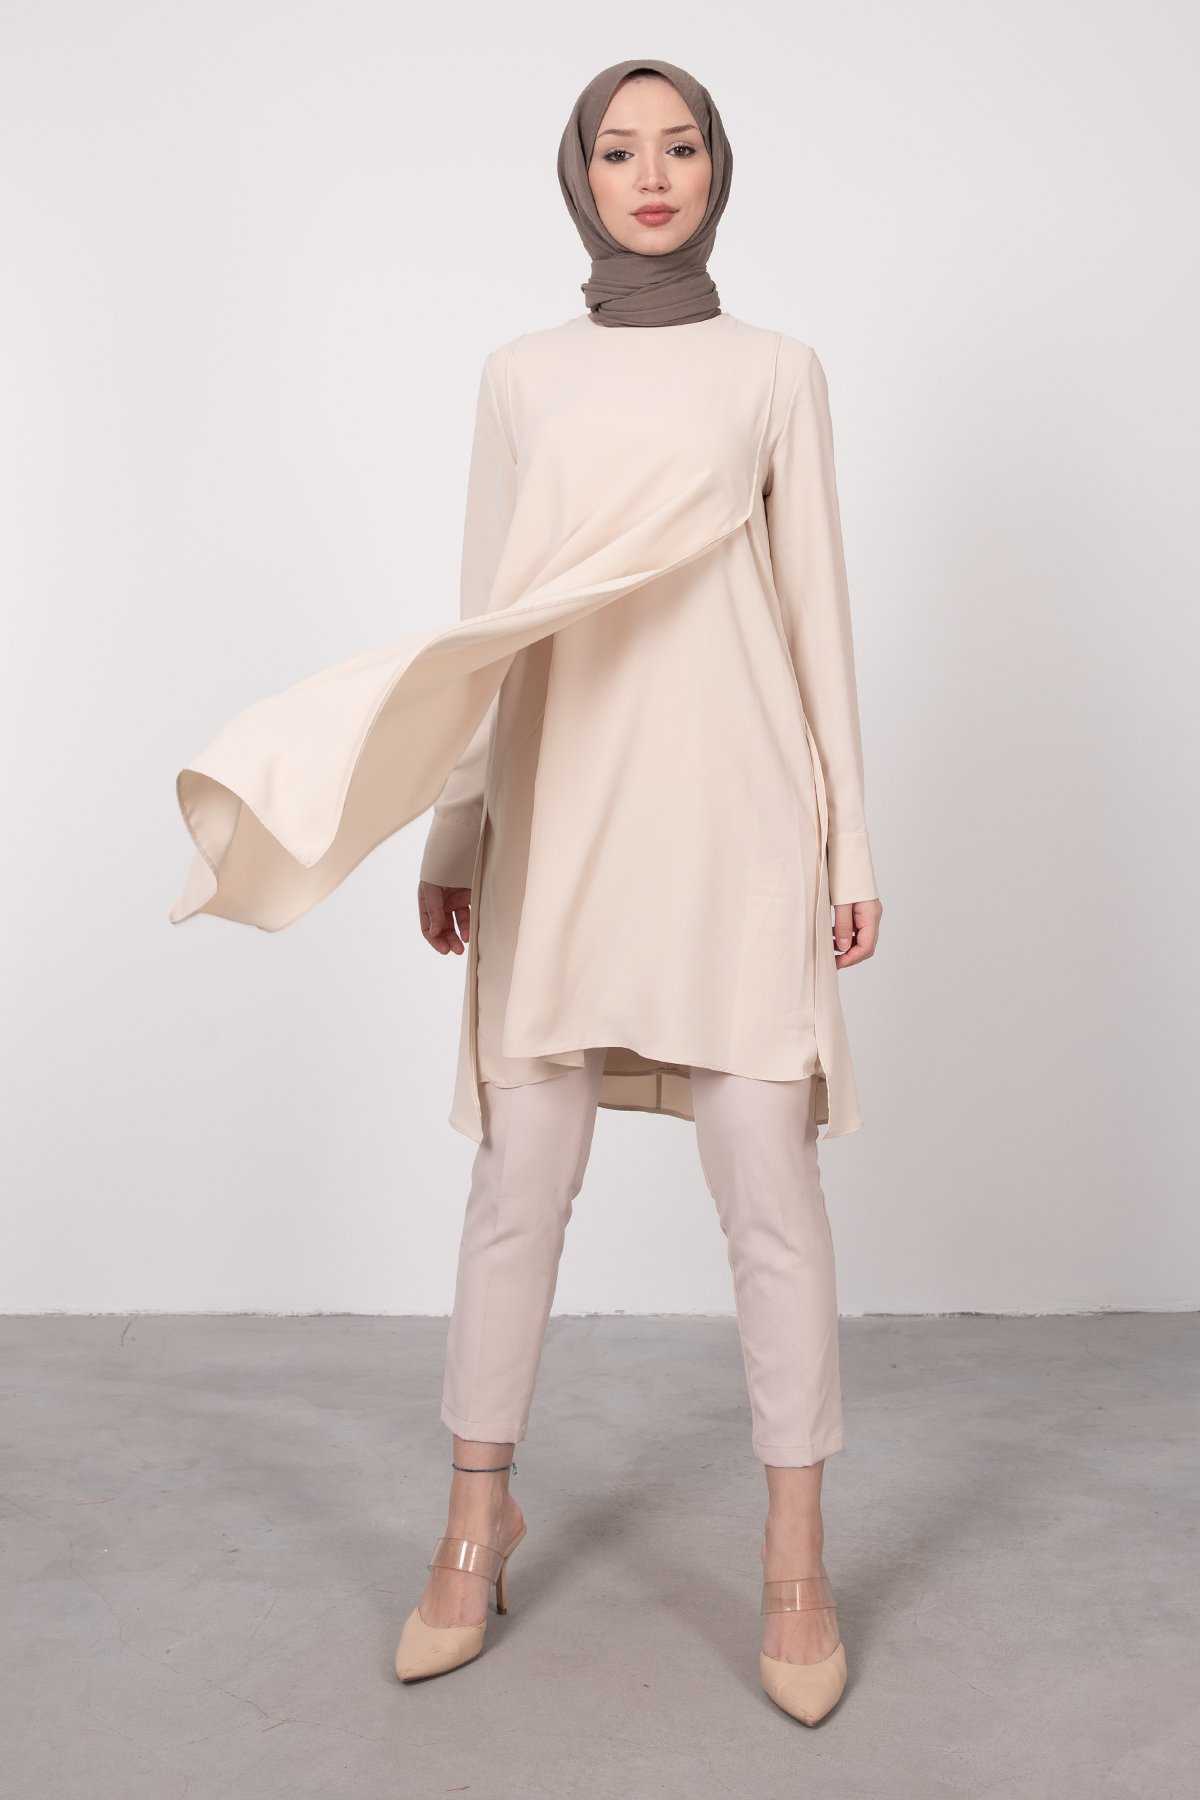 Lamia Giyim Yeni Sezon Tesettür Tunik Modelleri